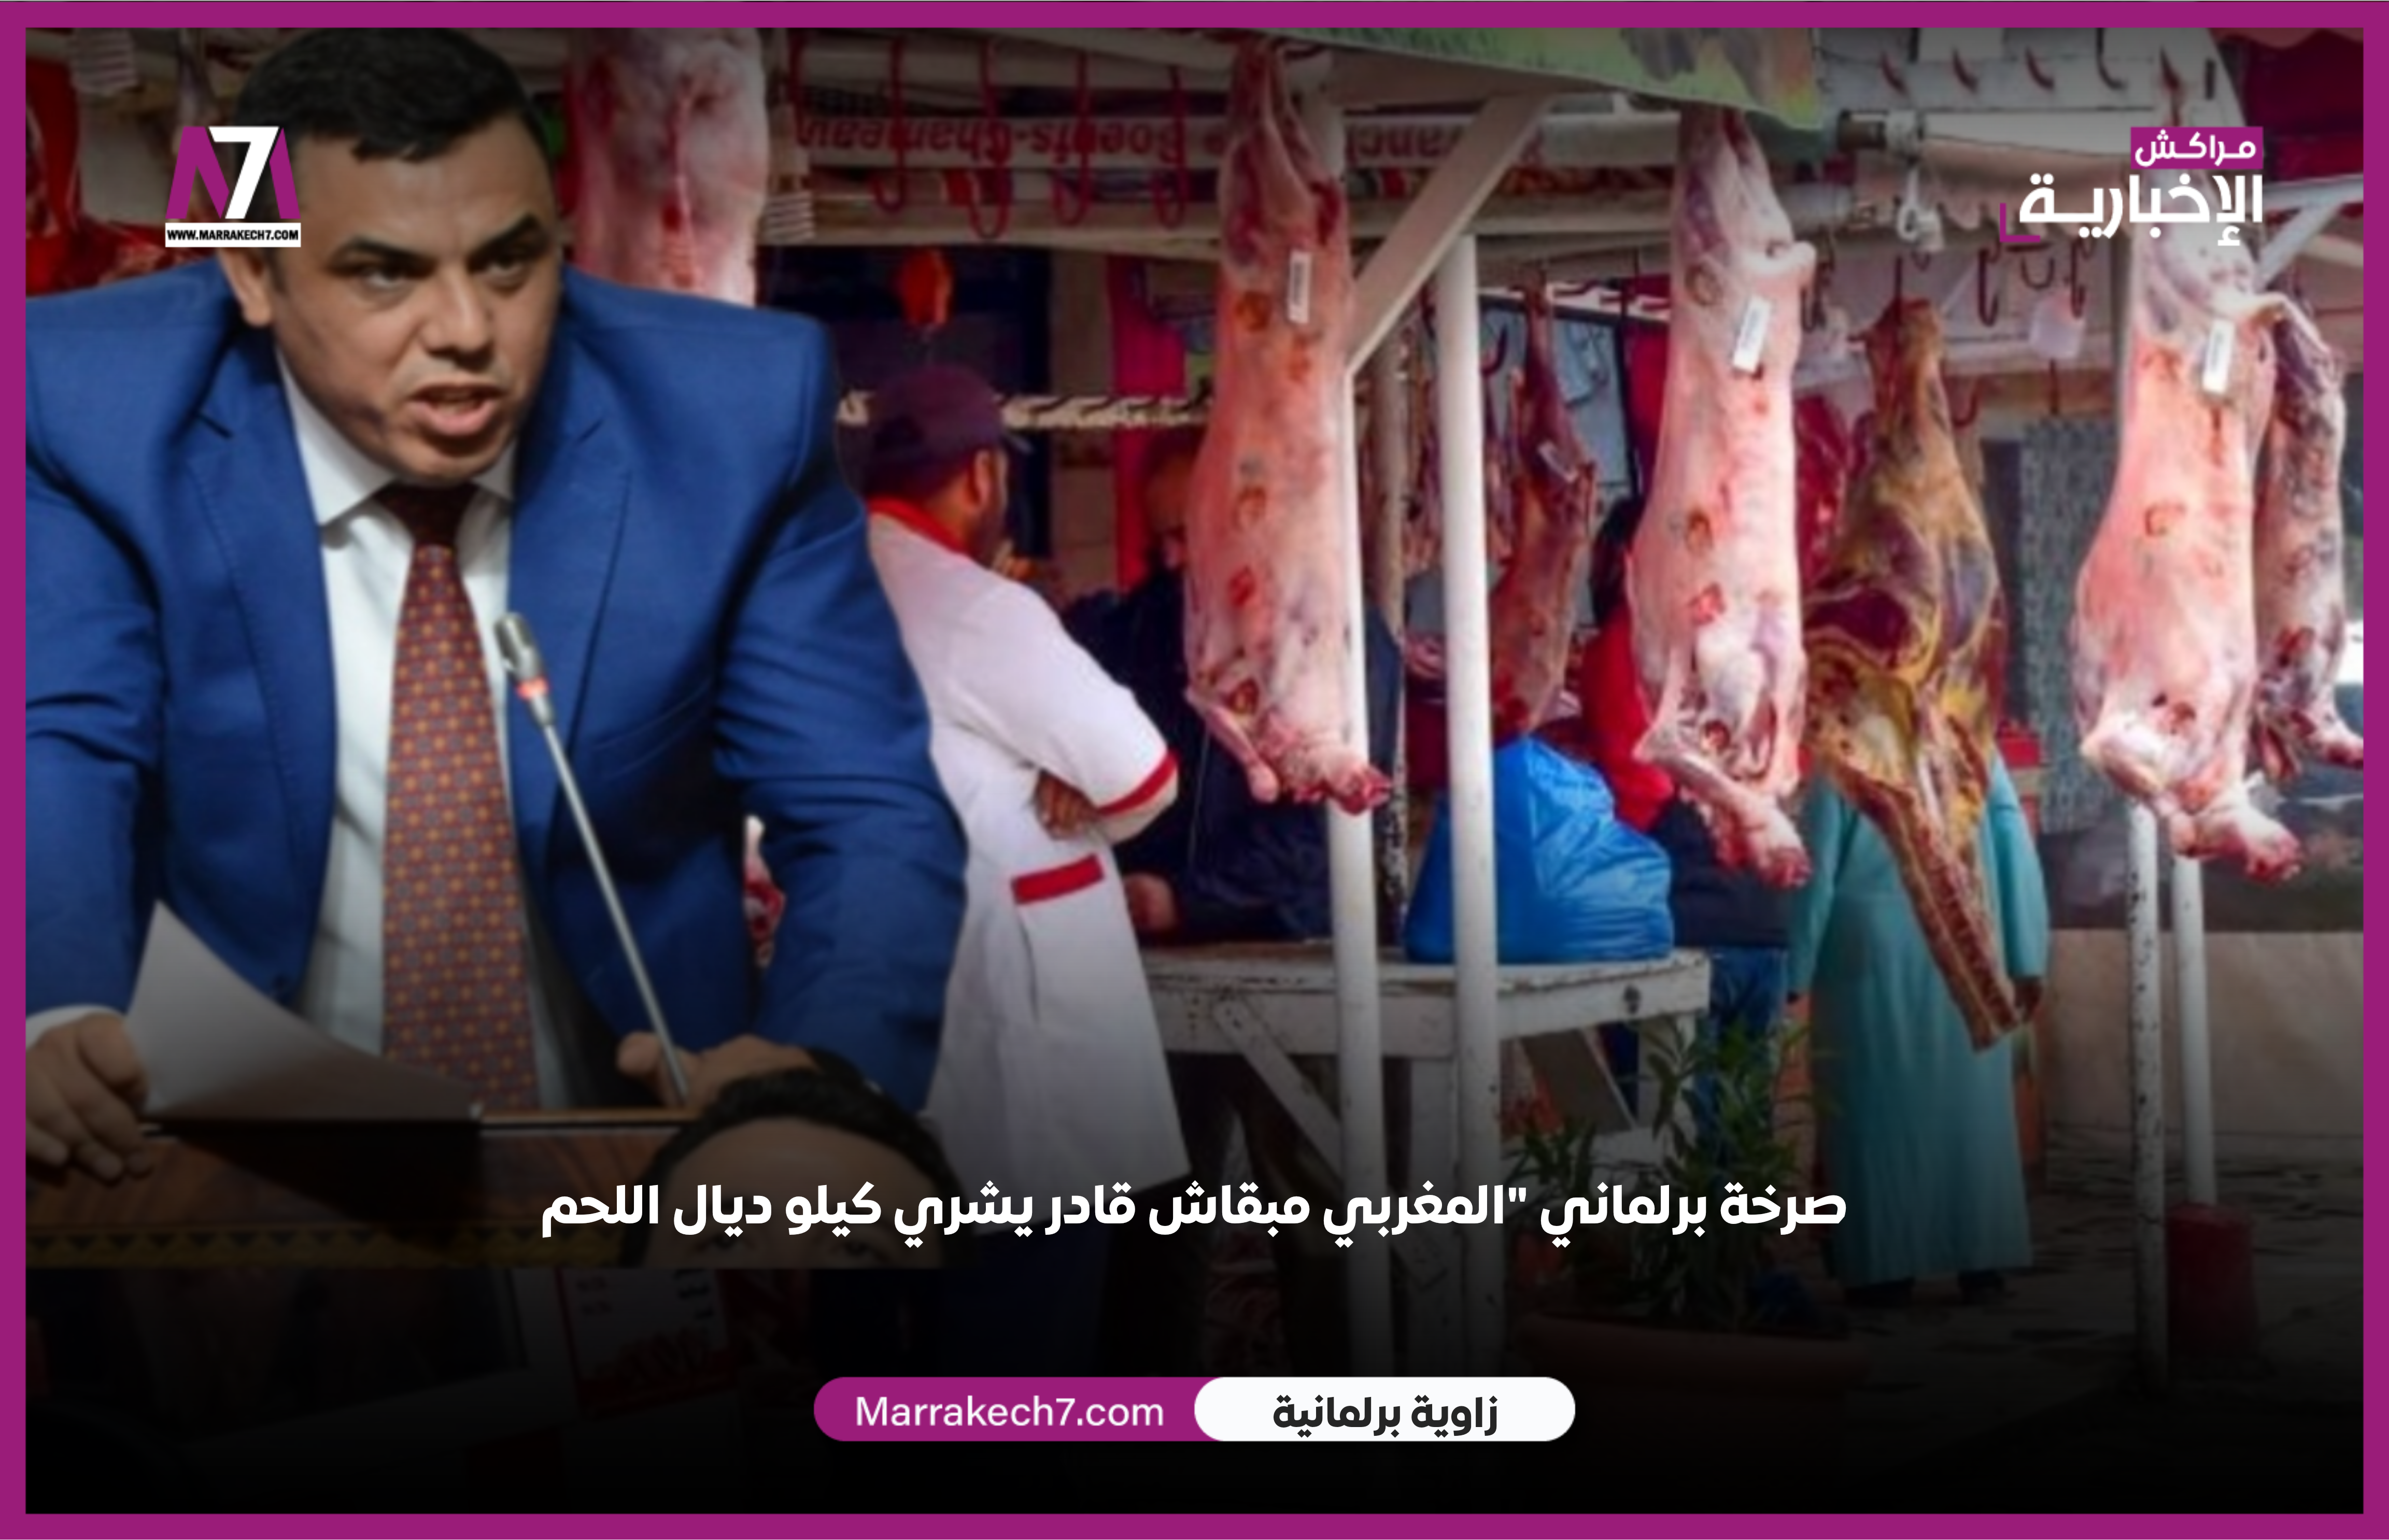 صرخة نائب برلماني « المغربي مبقاش قادر يشري كيلو ديال اللحم »